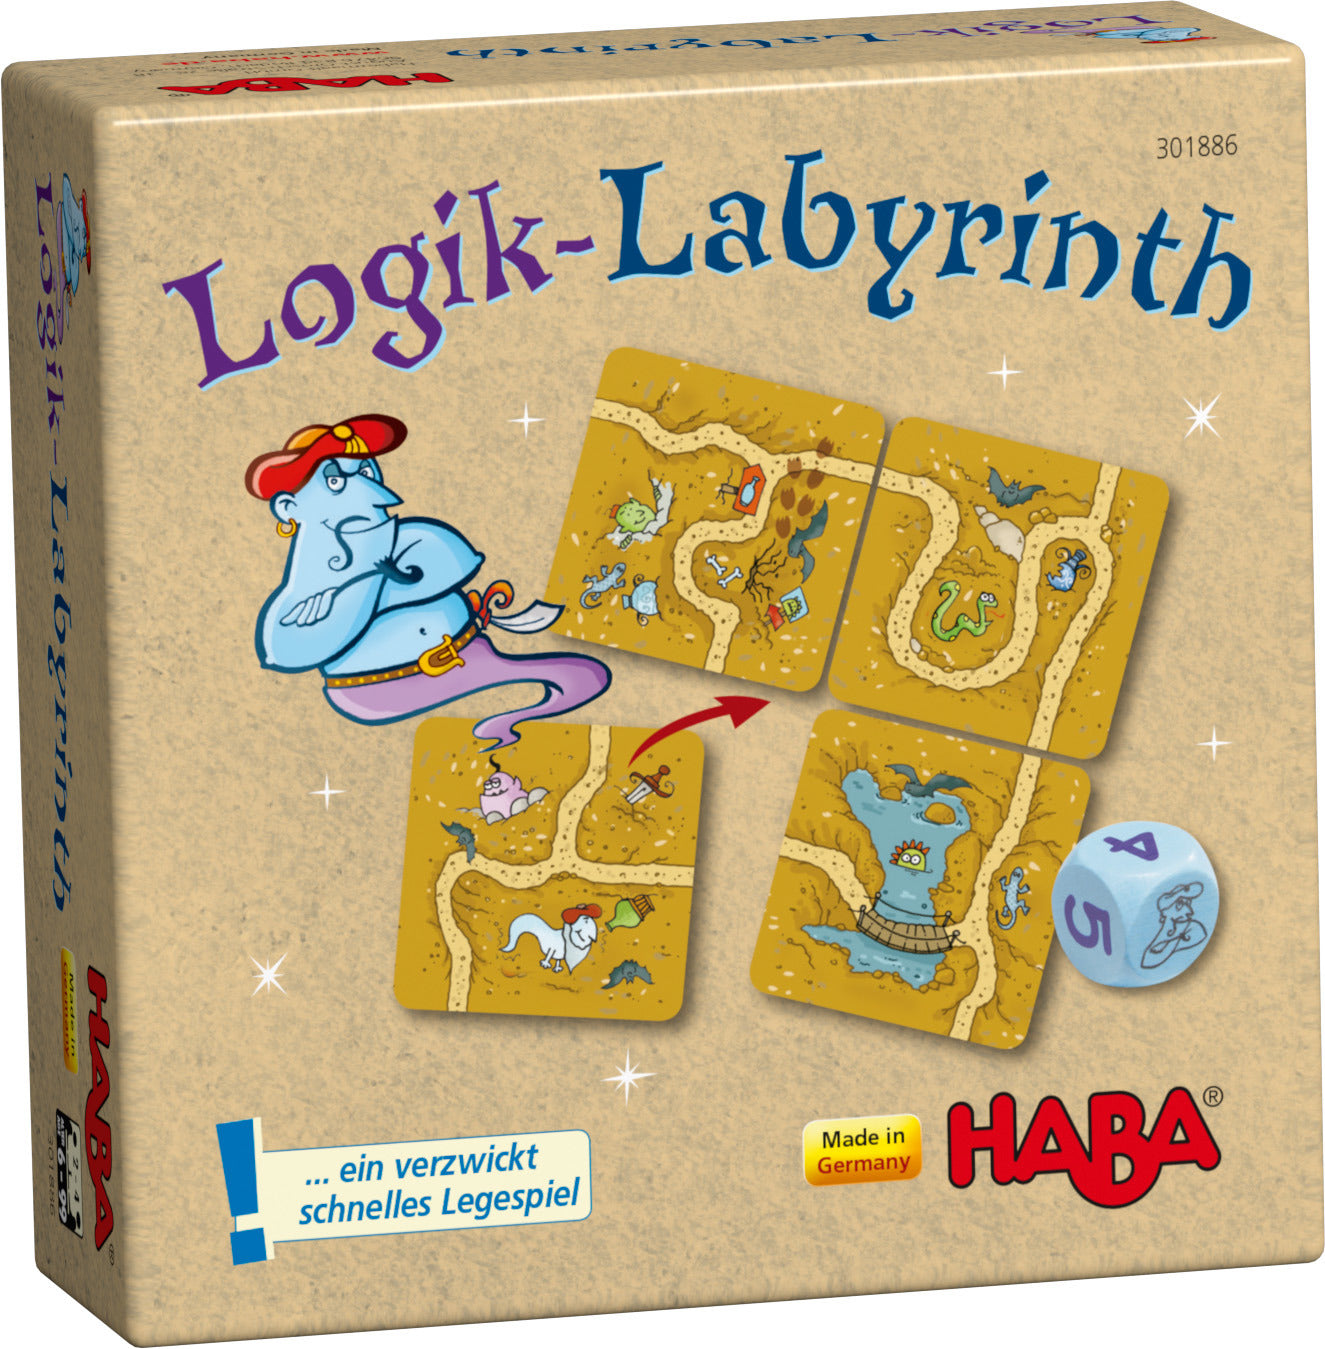 Logik-Labyrinth